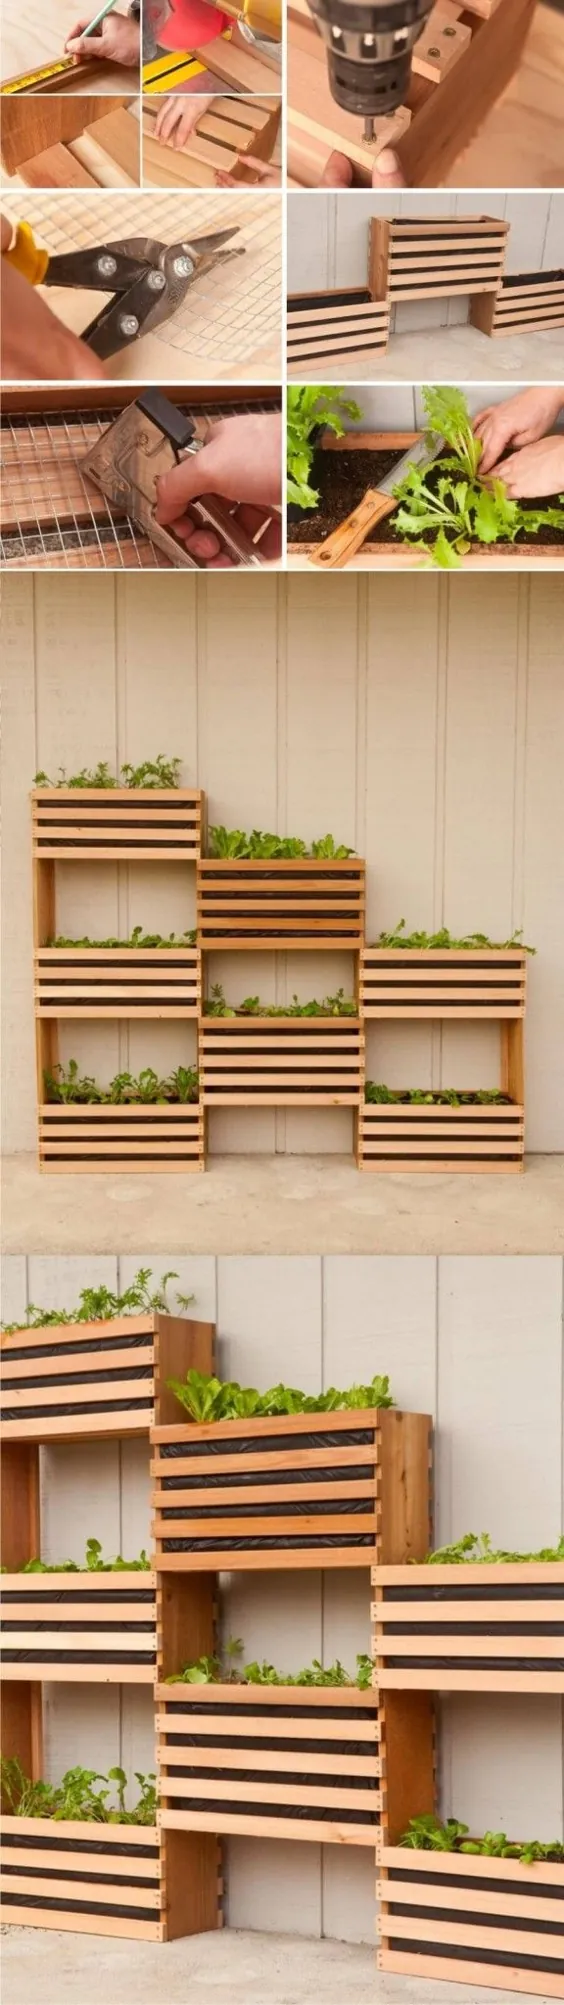 32 ایده برای جعبه کاشت پالت و چوب DIY برای باغ شما